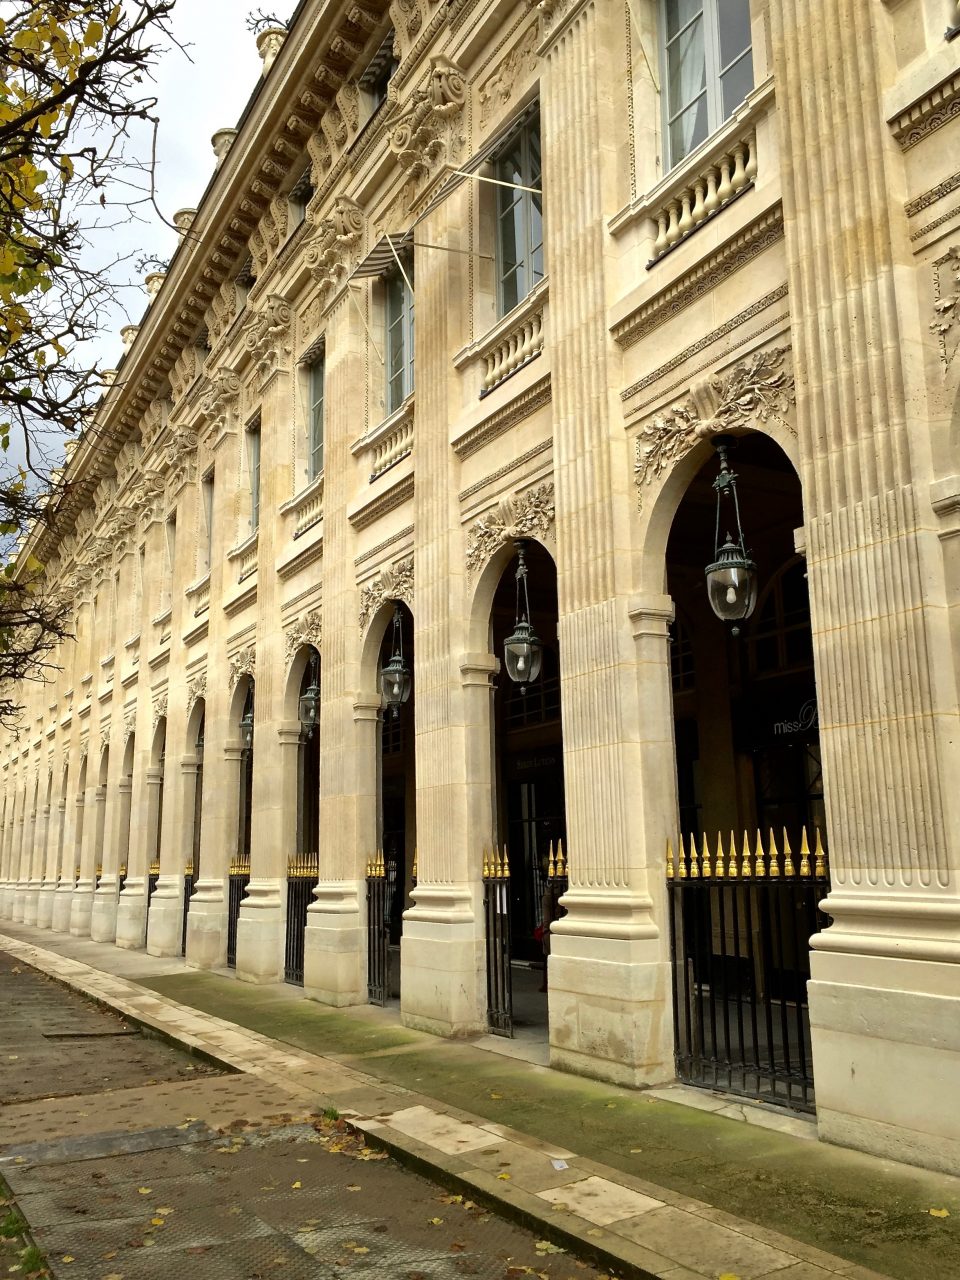 Palais-Royal facade and arcade